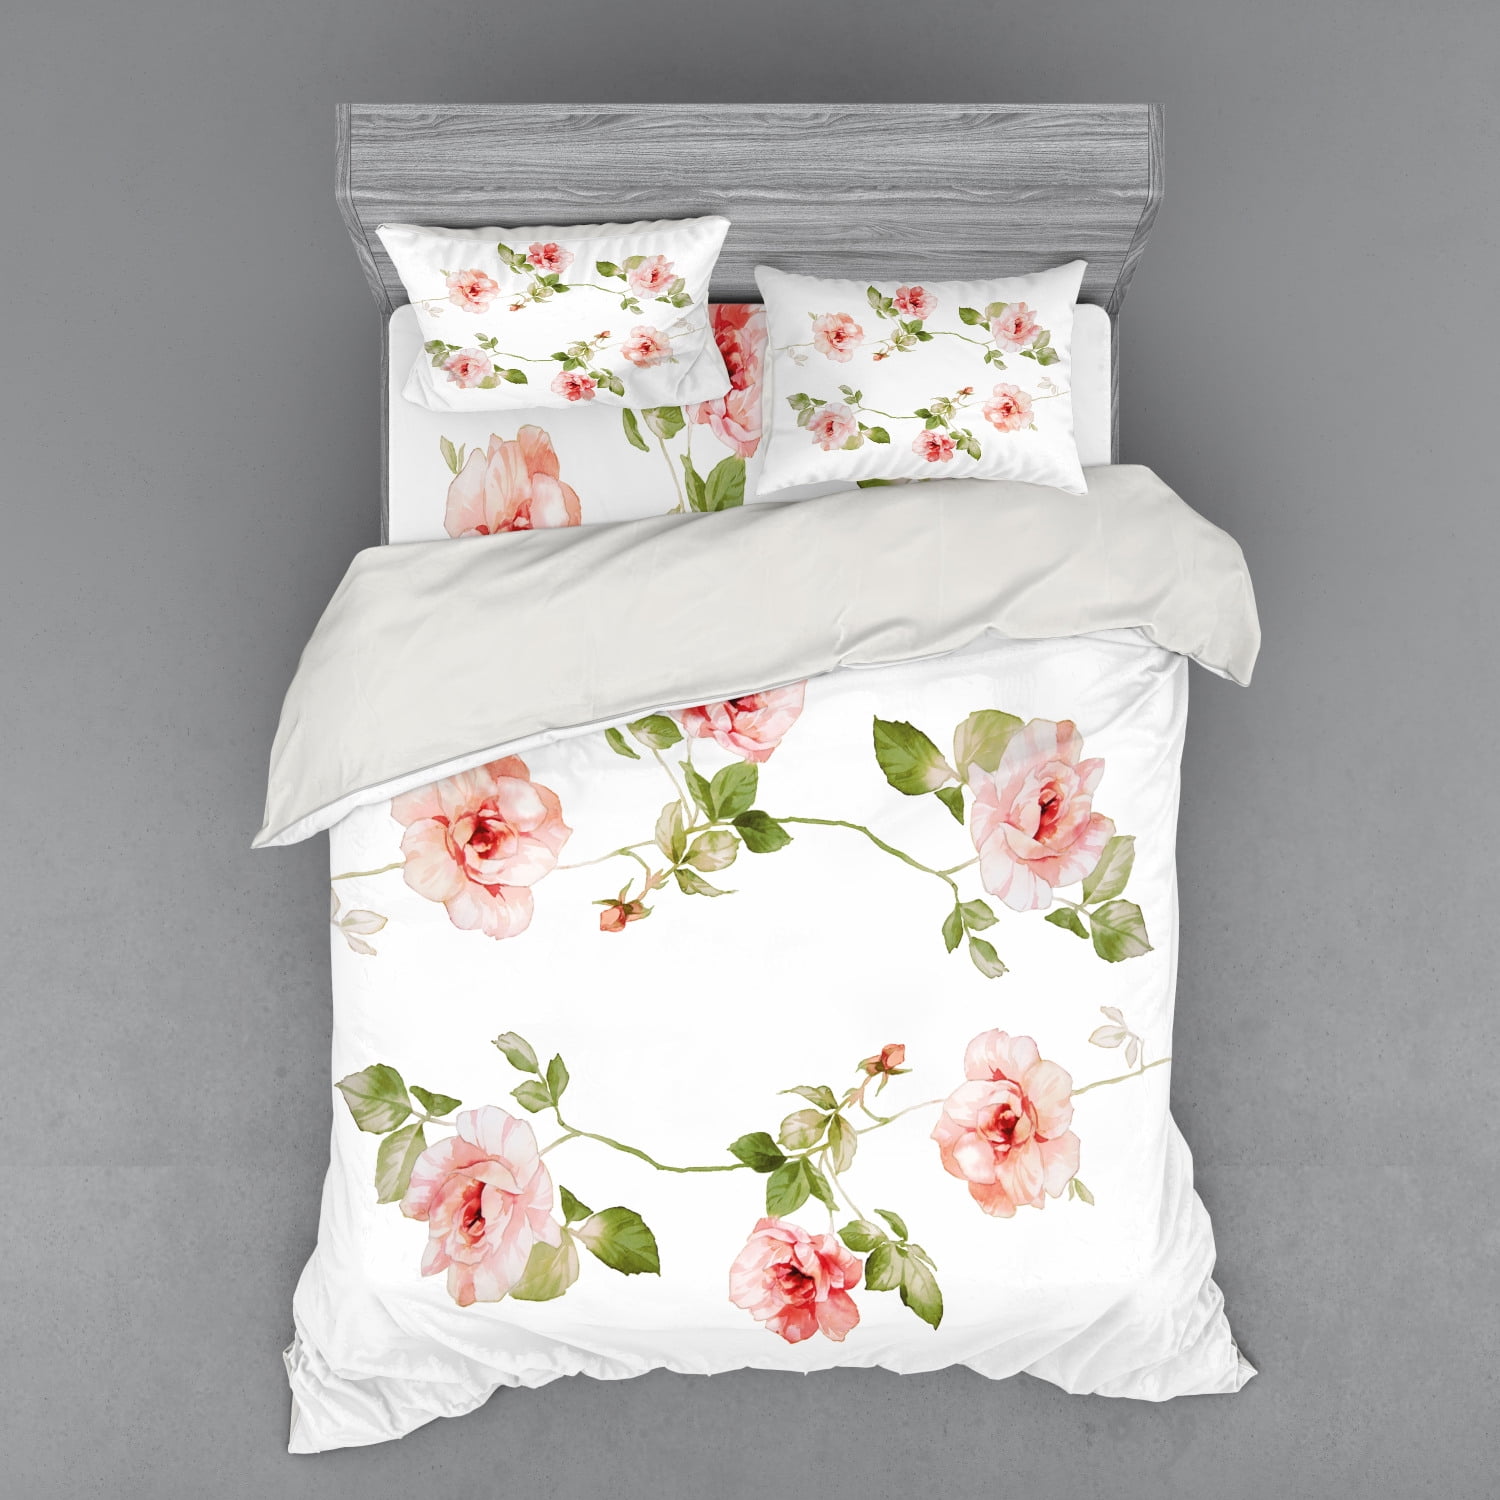 Floral Duvet Cover Set, Romantic Rose Flower Petals Shabby Form Love ...